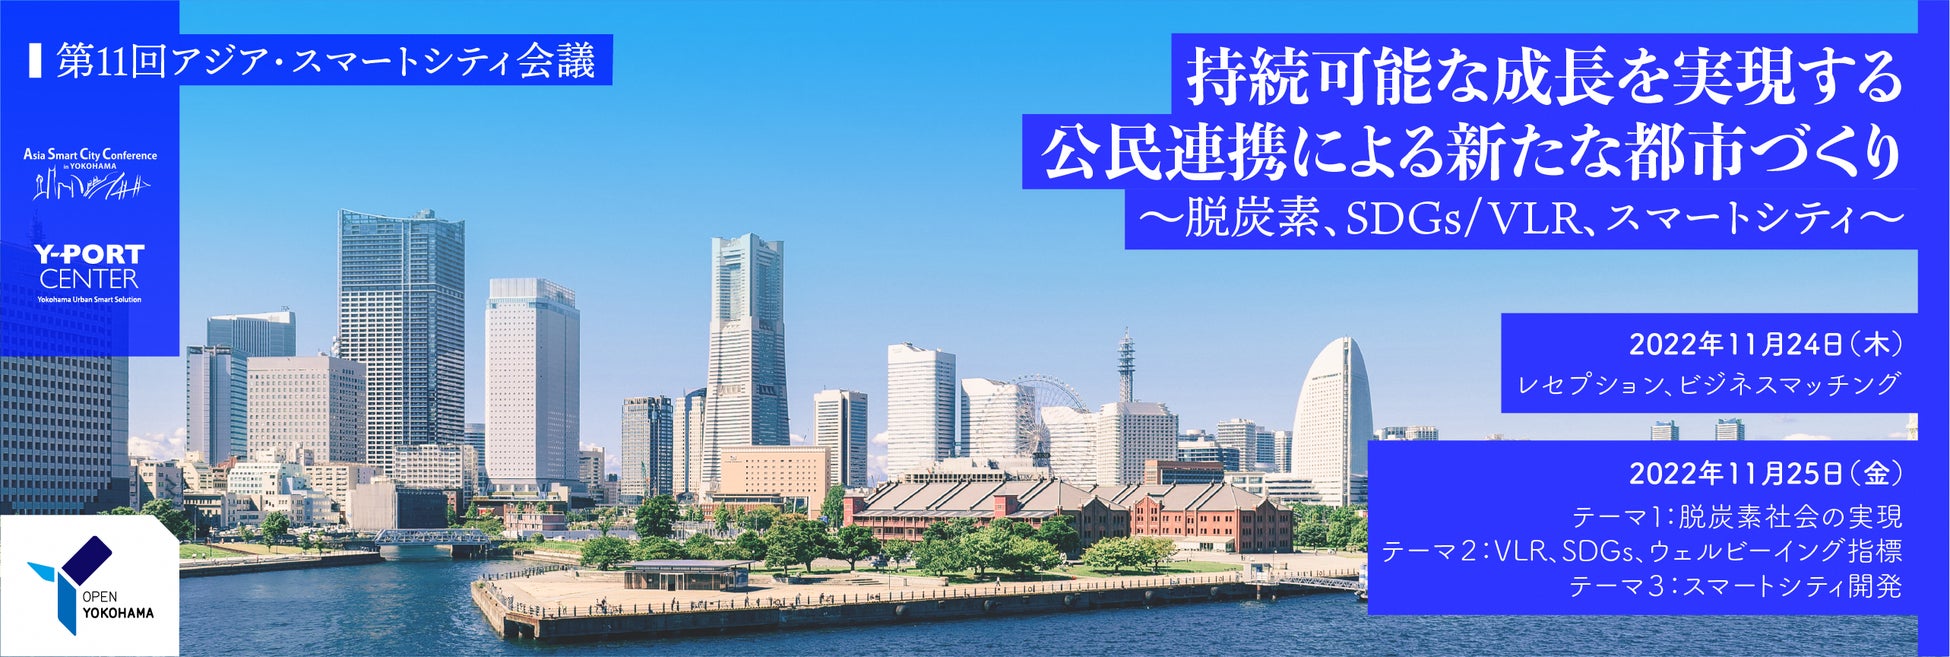 横浜市主催「第11回アジア・スマートシティ会議」を開催します！のサブ画像1